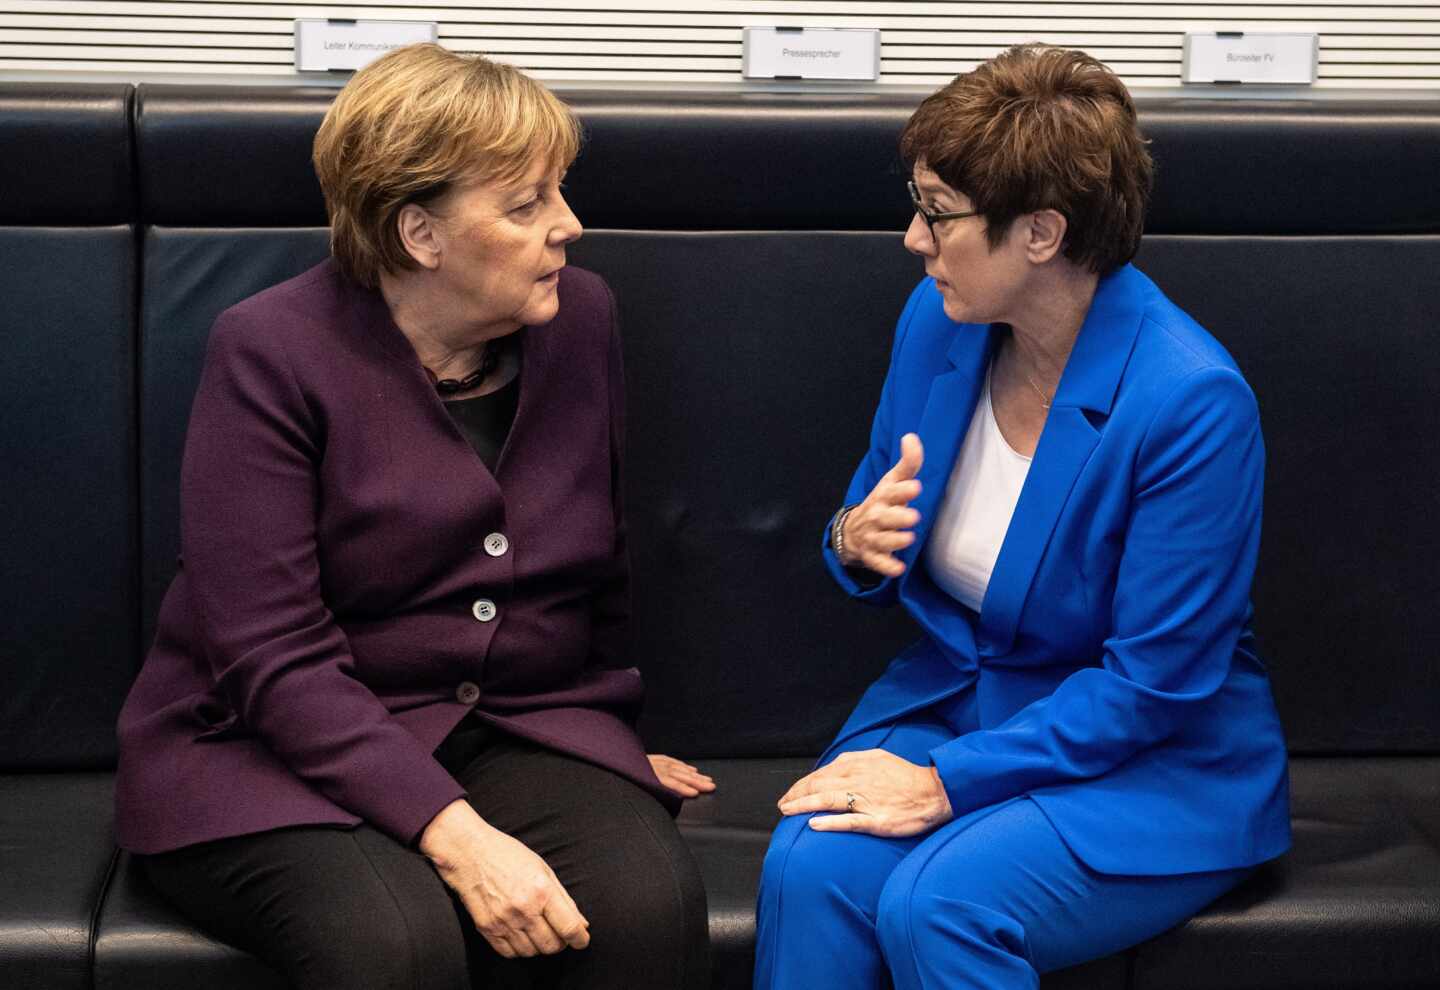 Merkel y AKK